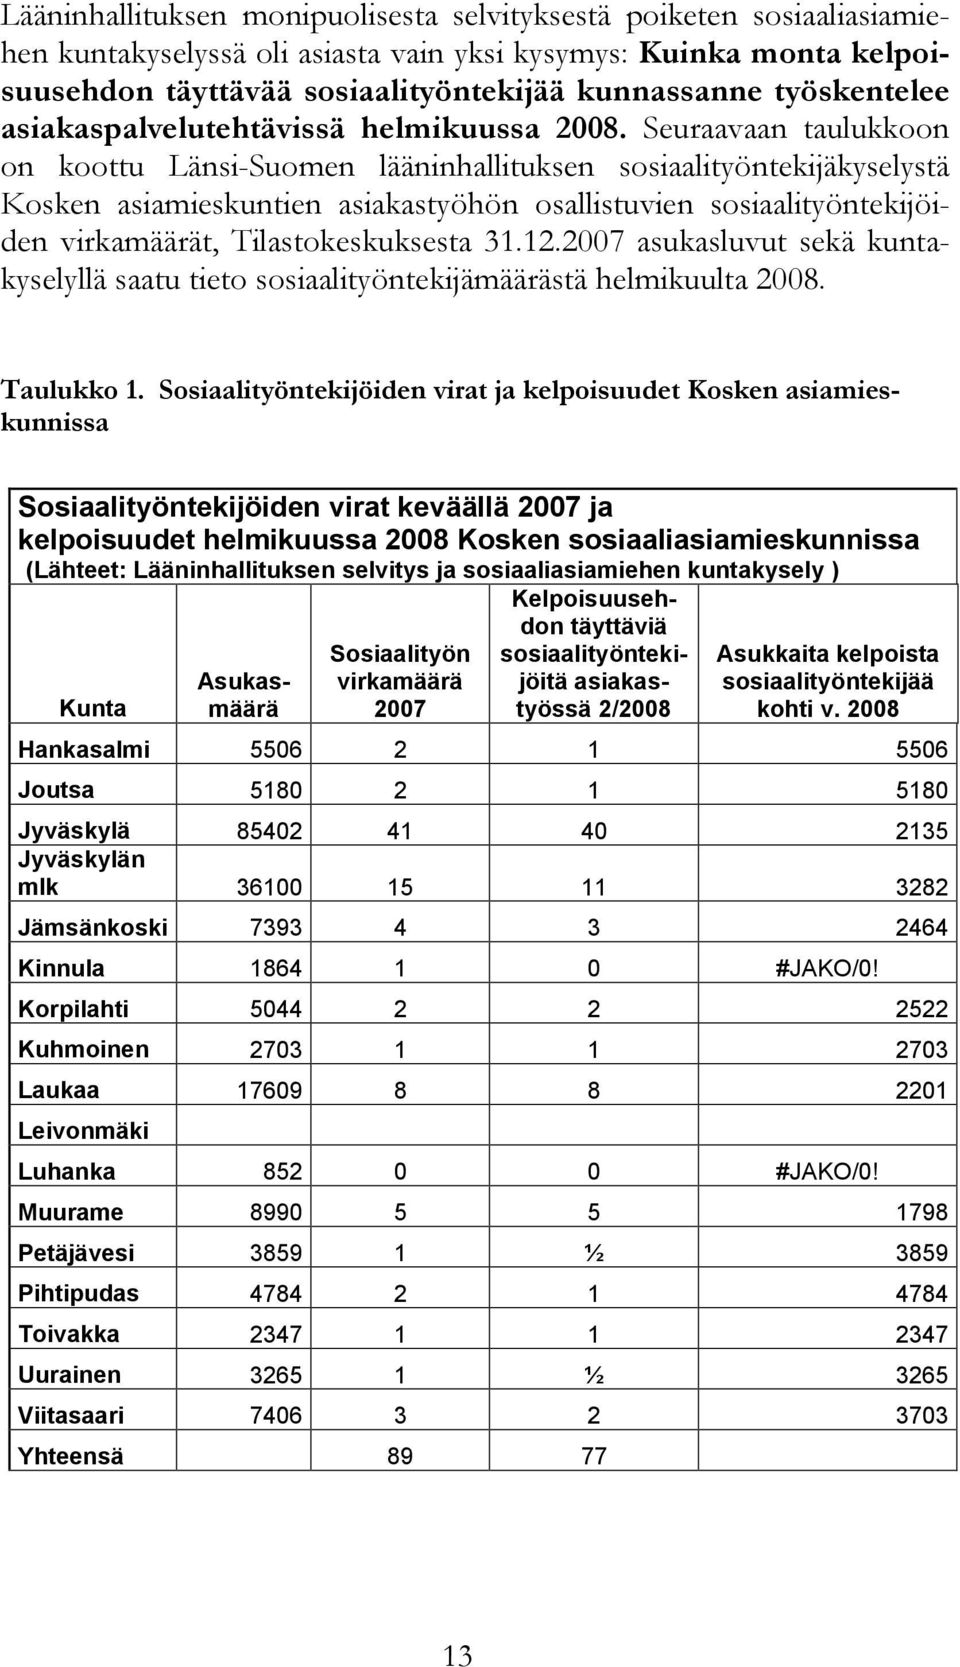 Seuraavaan taulukkoon on koottu Länsi-Suomen lääninhallituksen sosiaalityöntekijäkyselystä Kosken asiamieskuntien asiakastyöhön osallistuvien sosiaalityöntekijöiden virkamäärät, Tilastokeskuksesta 31.